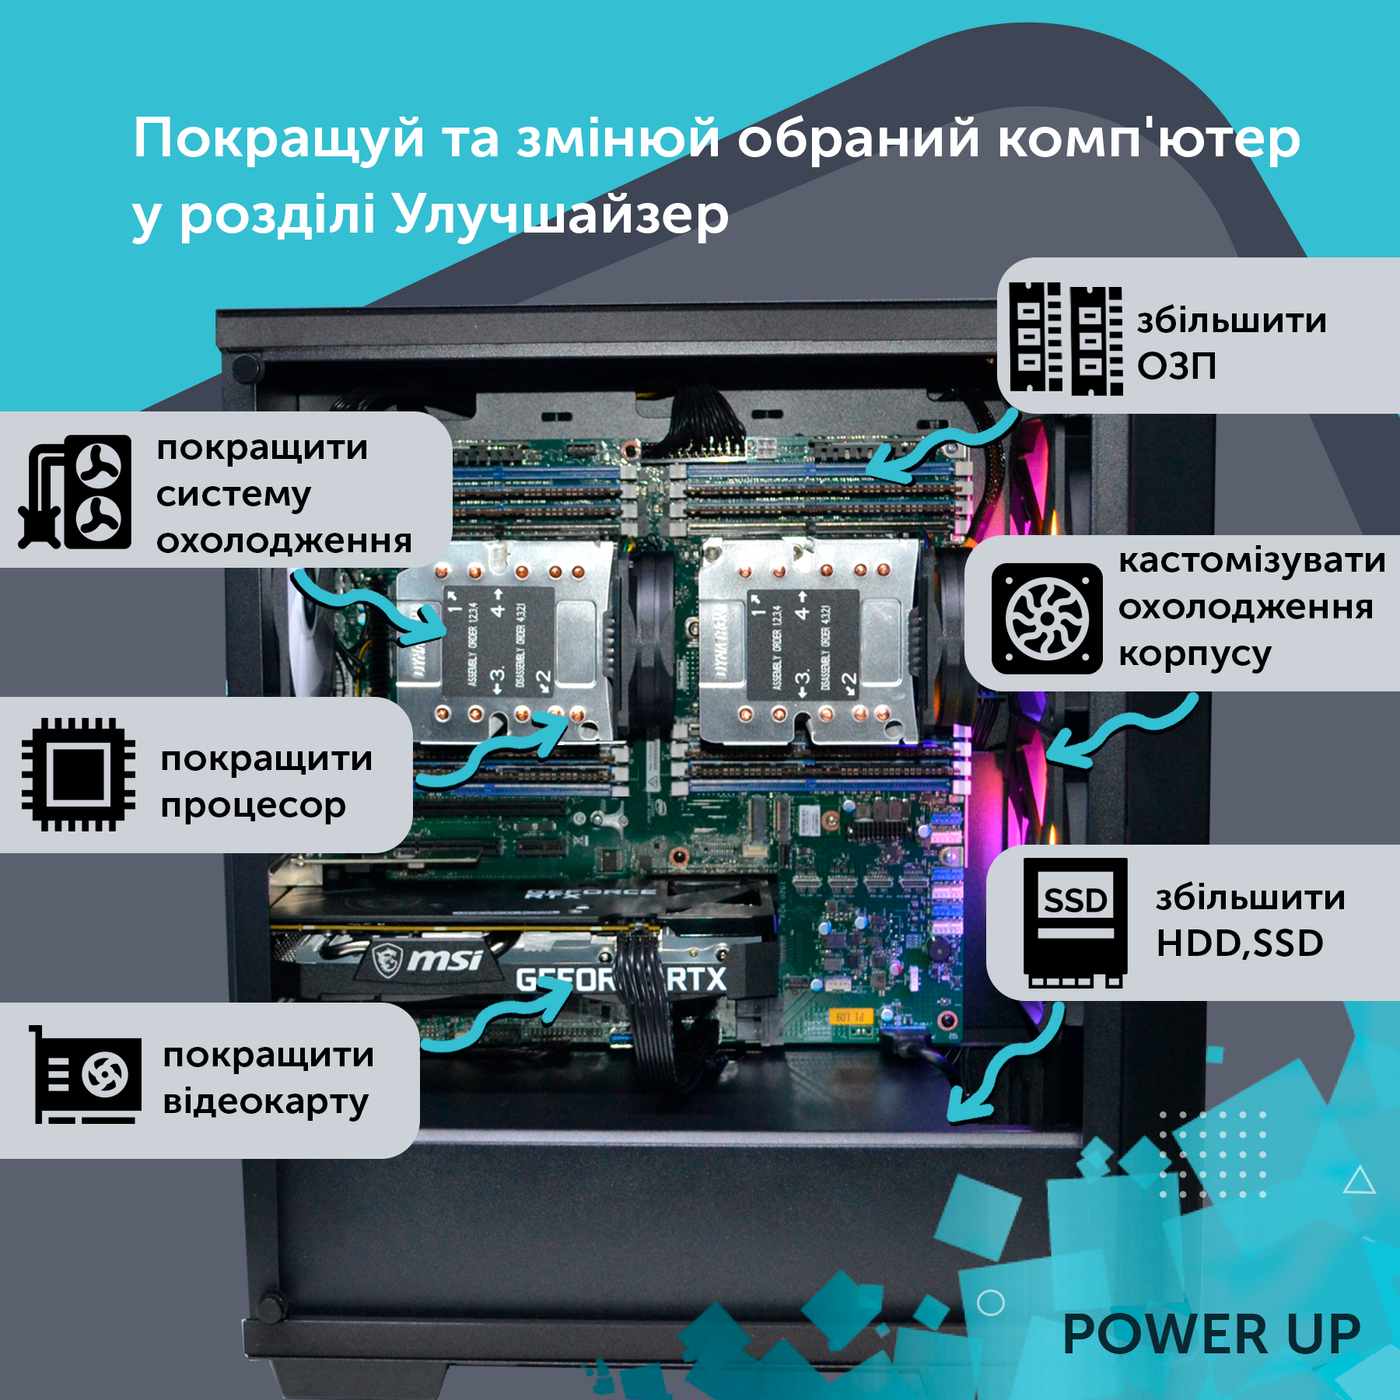 Двопроцесорна робоча станція PowerUp #366 Xeon E5 2699 v4 x2/128 GB/SSD 4TB/GeForce RTX 4060 8GB